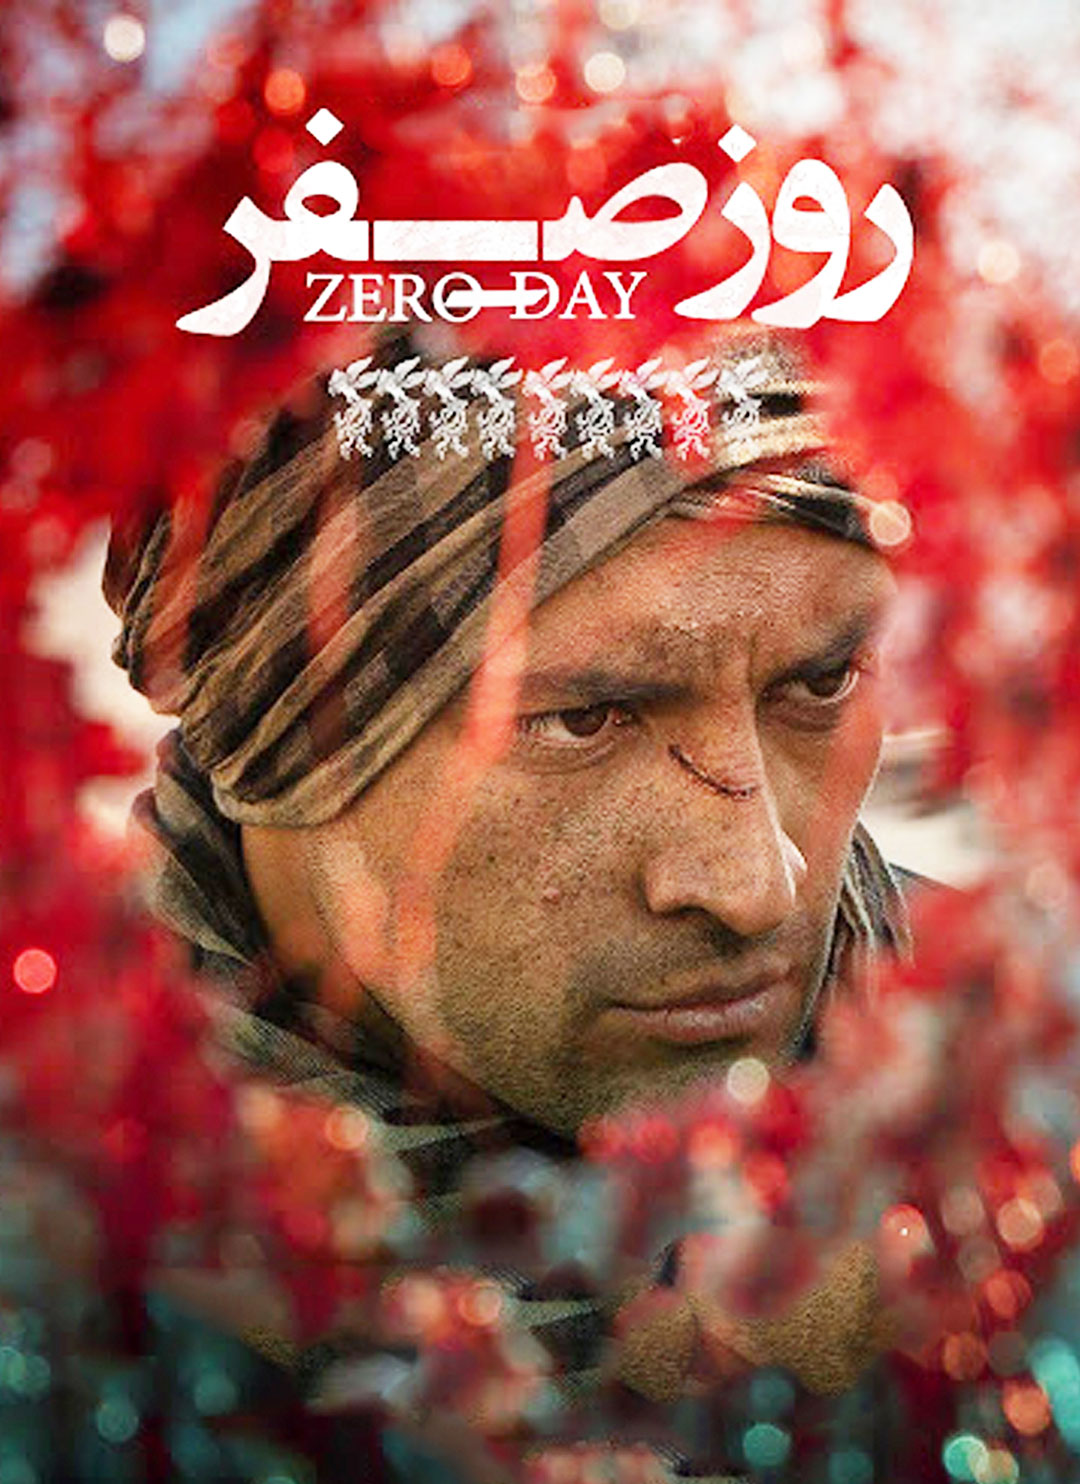 واکنش منتقدان به فیلم روز صفر سعید ملکان | فیلیموشات